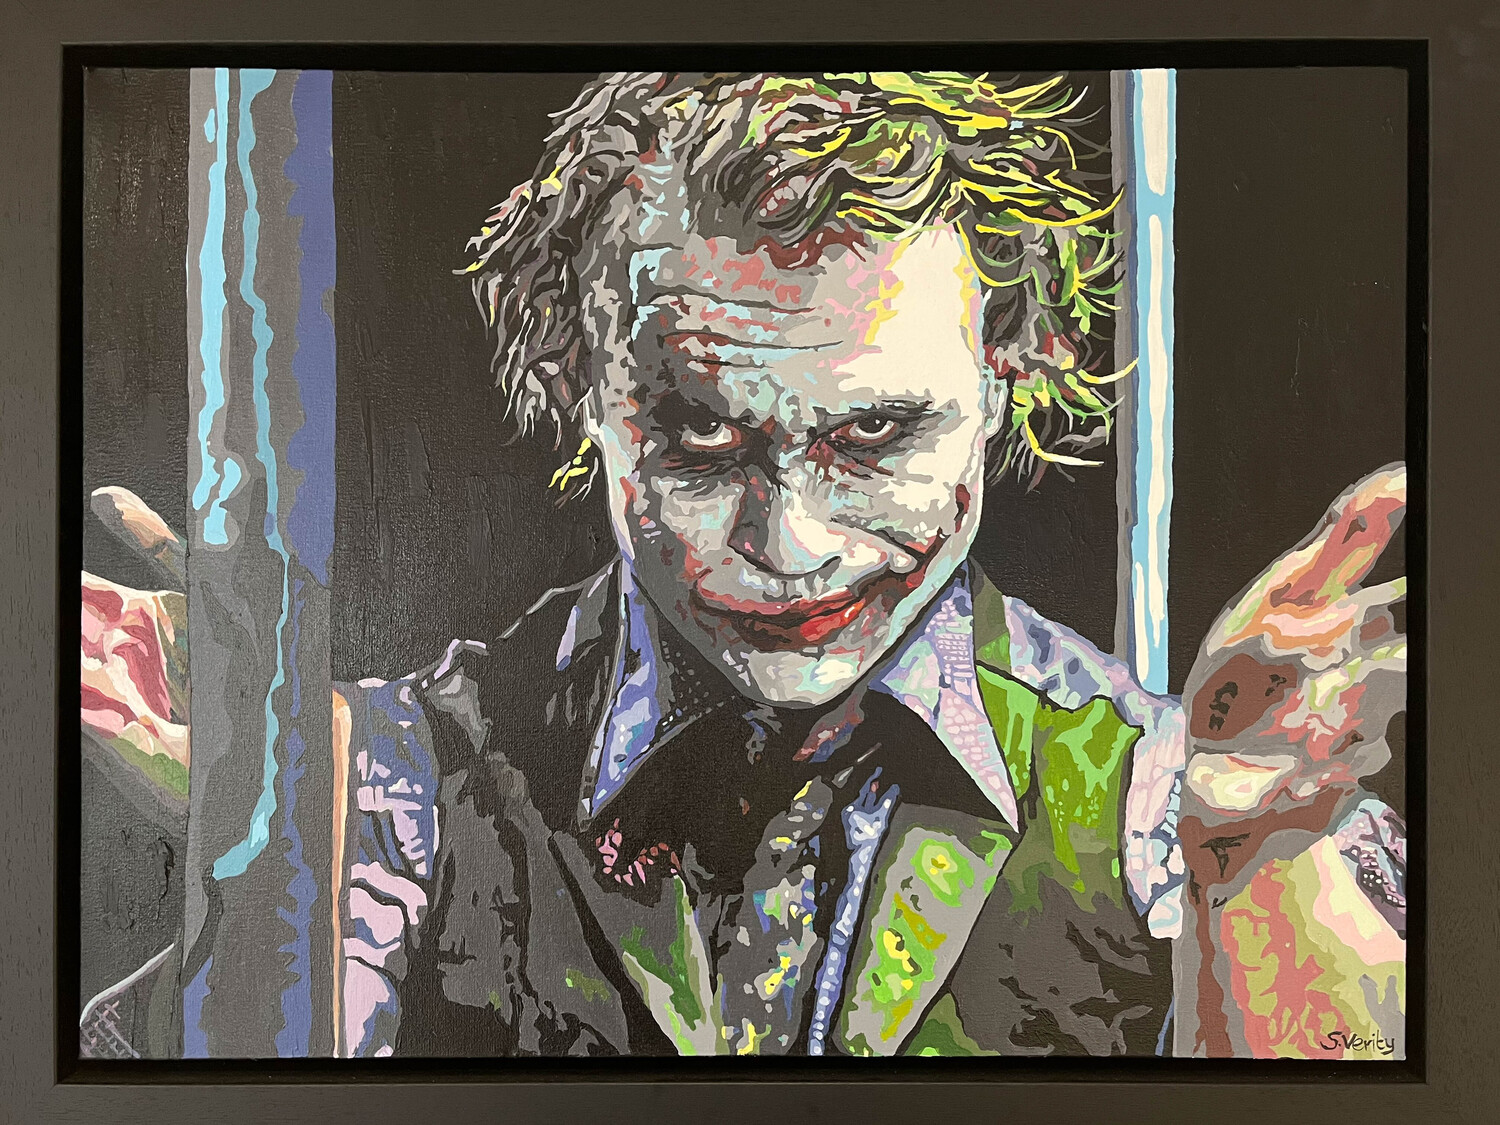 The Joker by Sue Verity